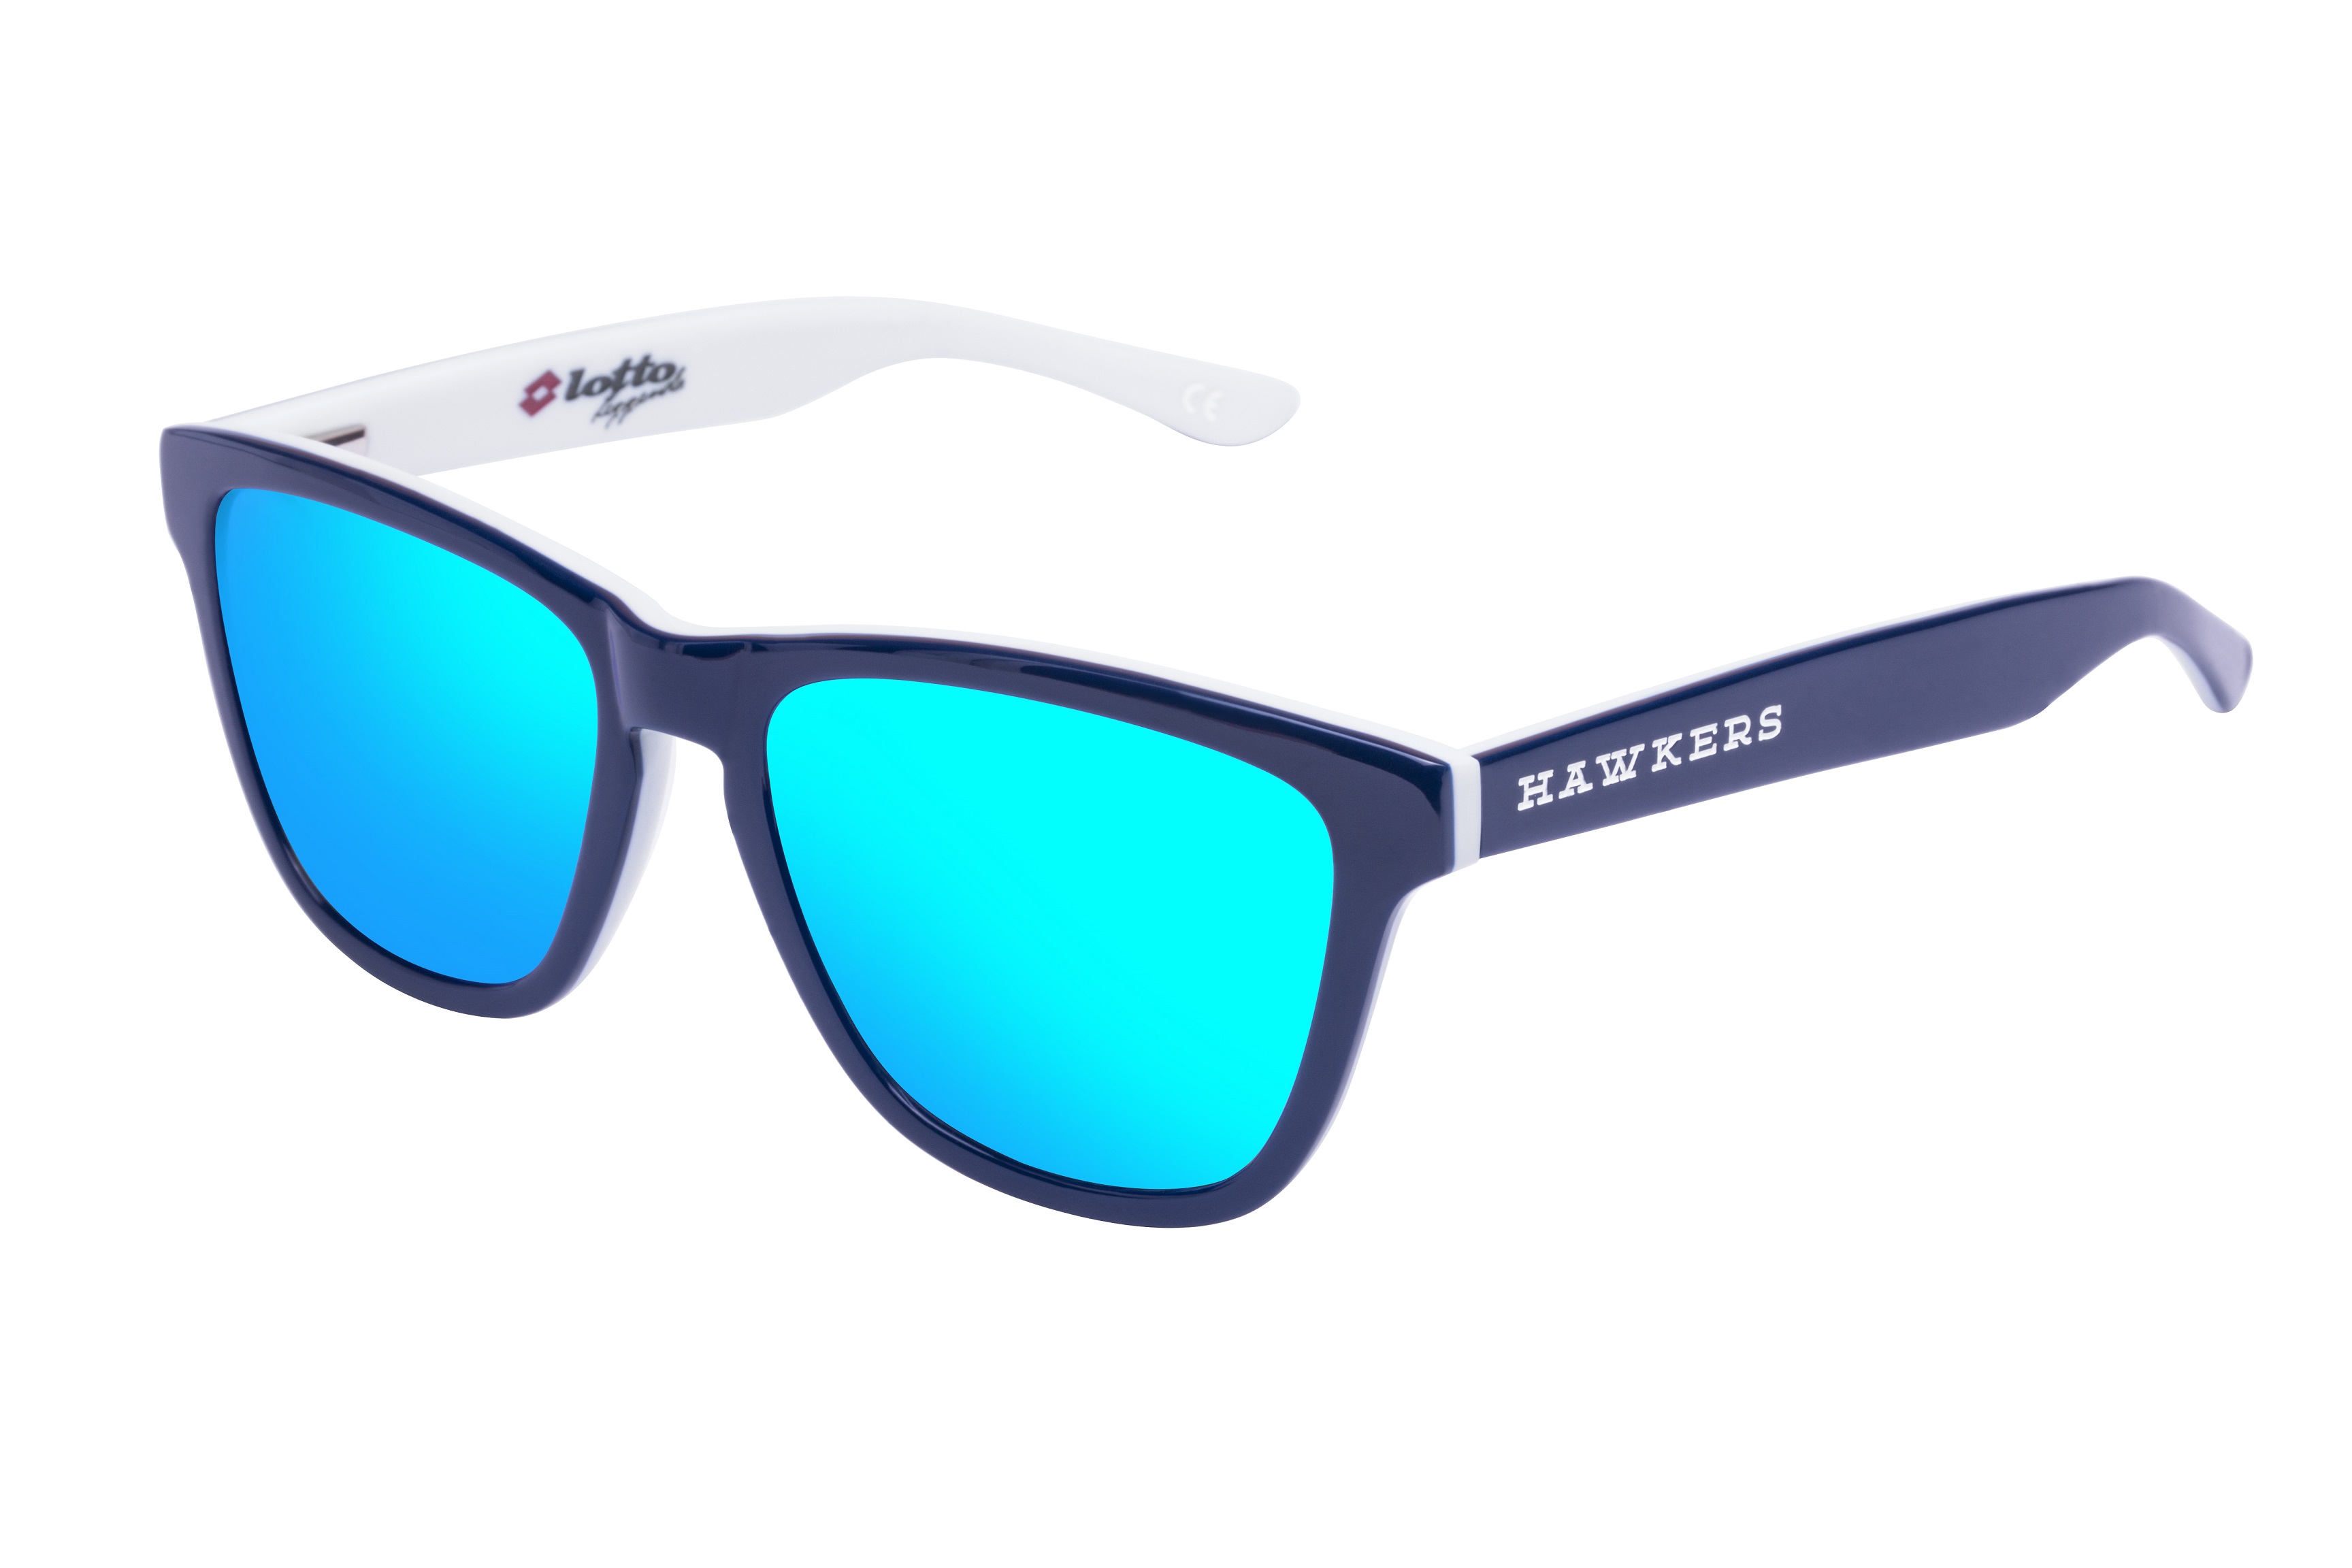 Hawkers Lotto Leggenda: la nuova limited edition di occhiali da sole